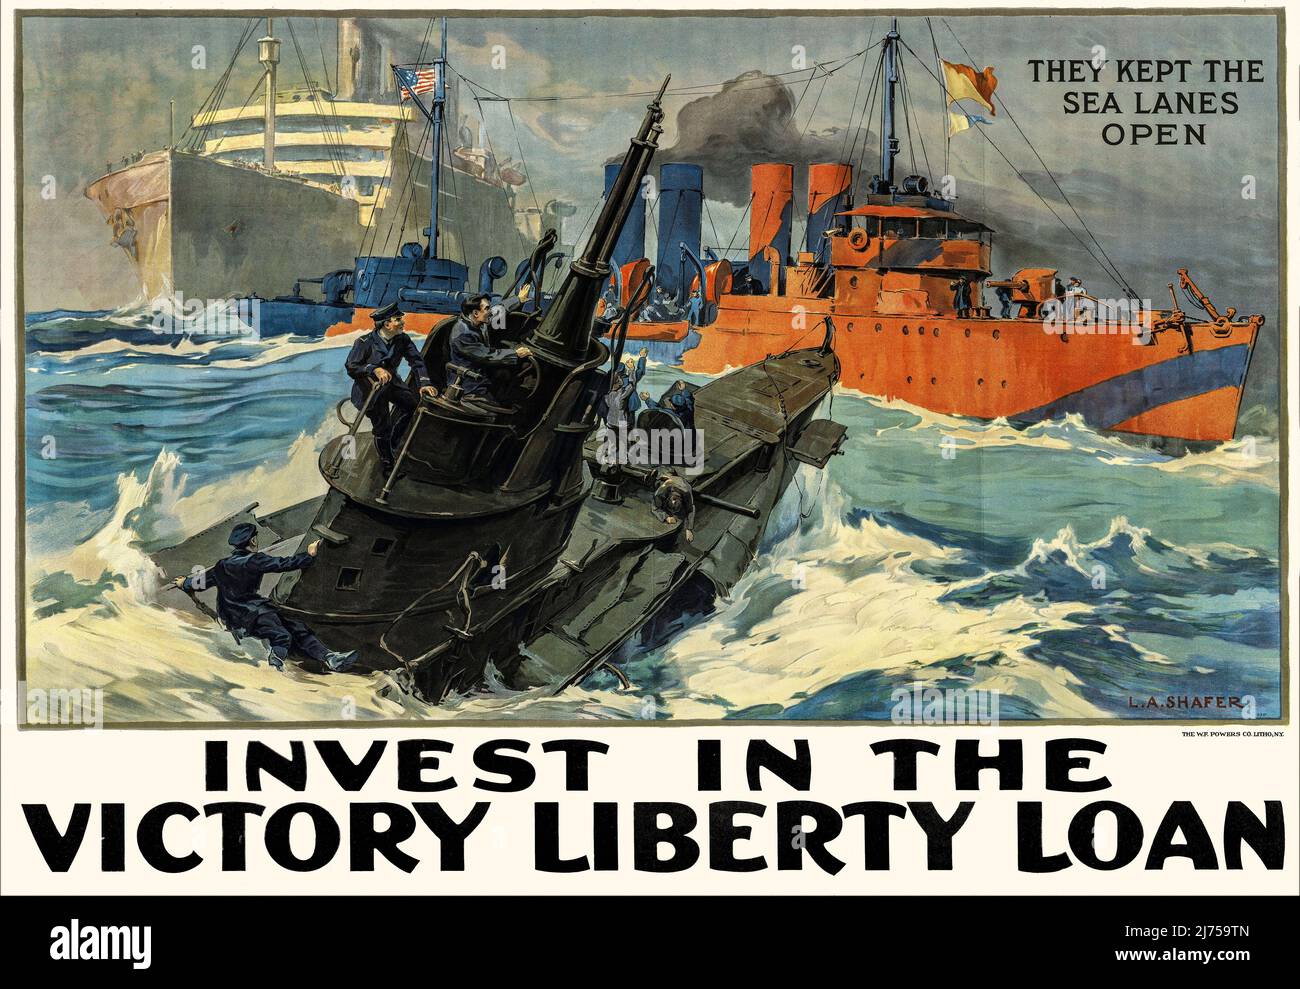 Une affiche d'investissement américaine du début du siècle 20th de la première Guerre mondiale, 1914-1918, montrant divers navires de guerre et un paquebot en action. L'artiste est L. A. Shafer (1866-1940) Banque D'Images